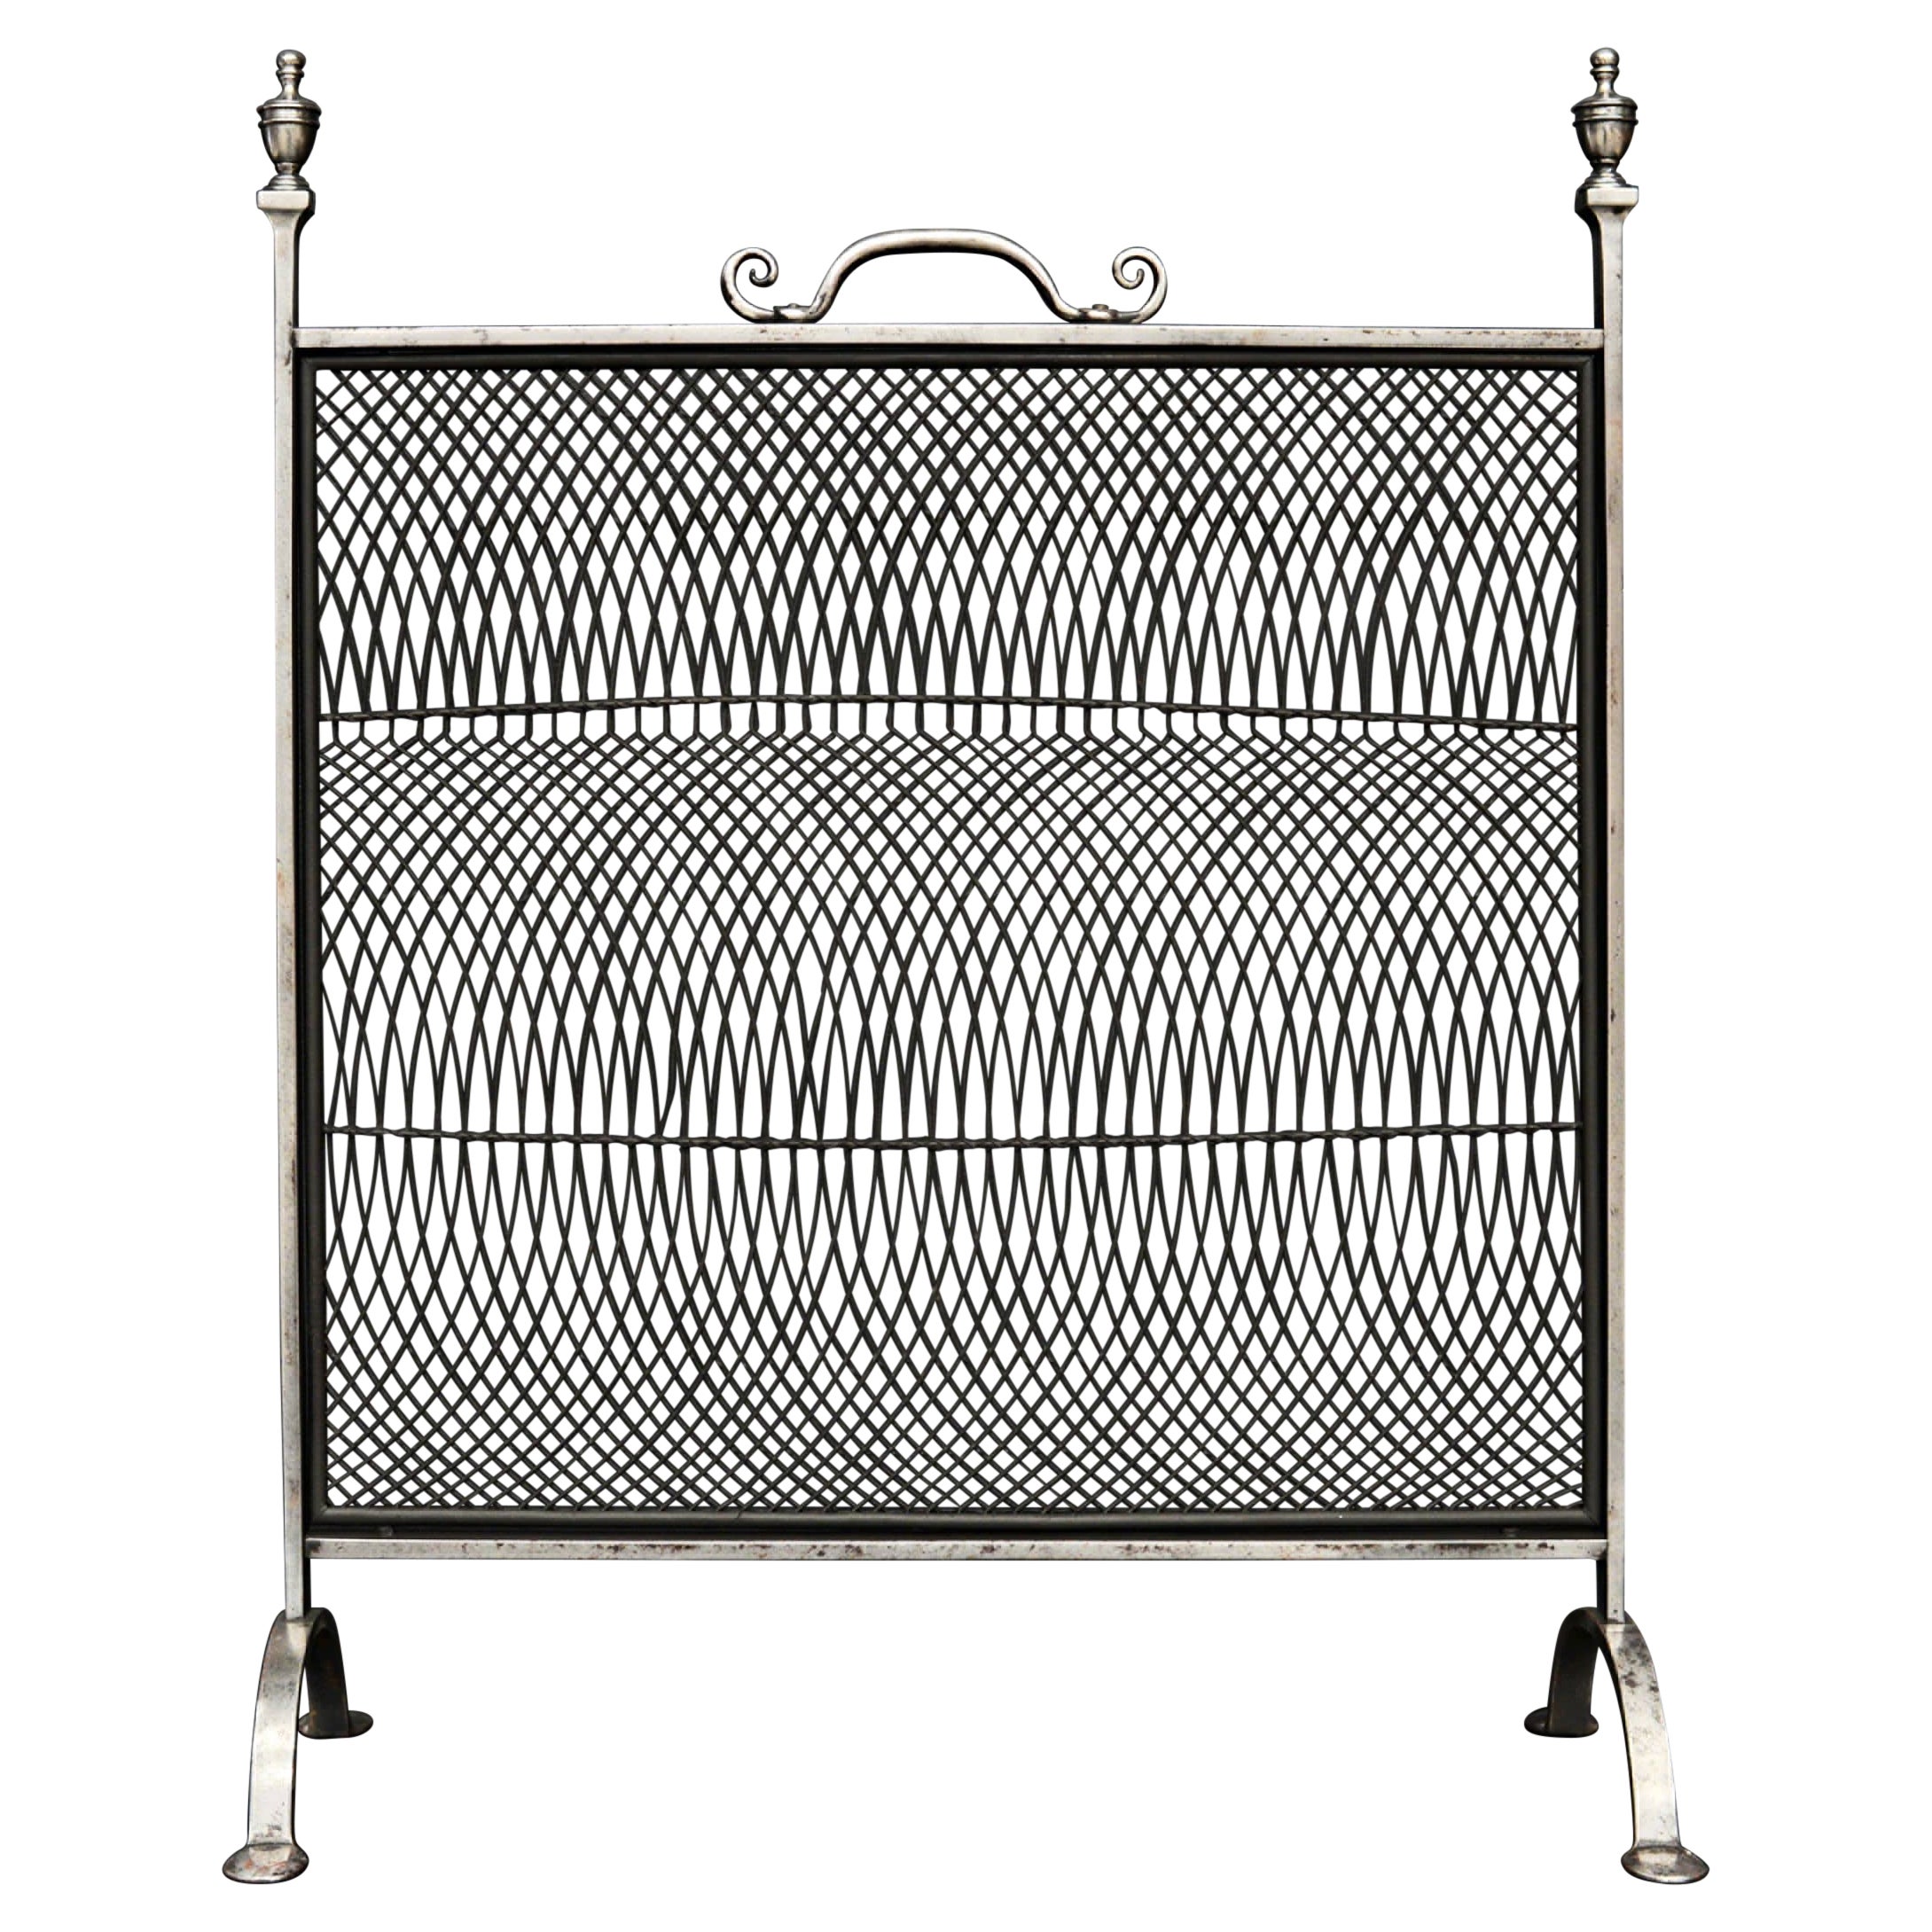 Kaminschirm im klassischen Stil mit Rahmen aus poliertem Stahl